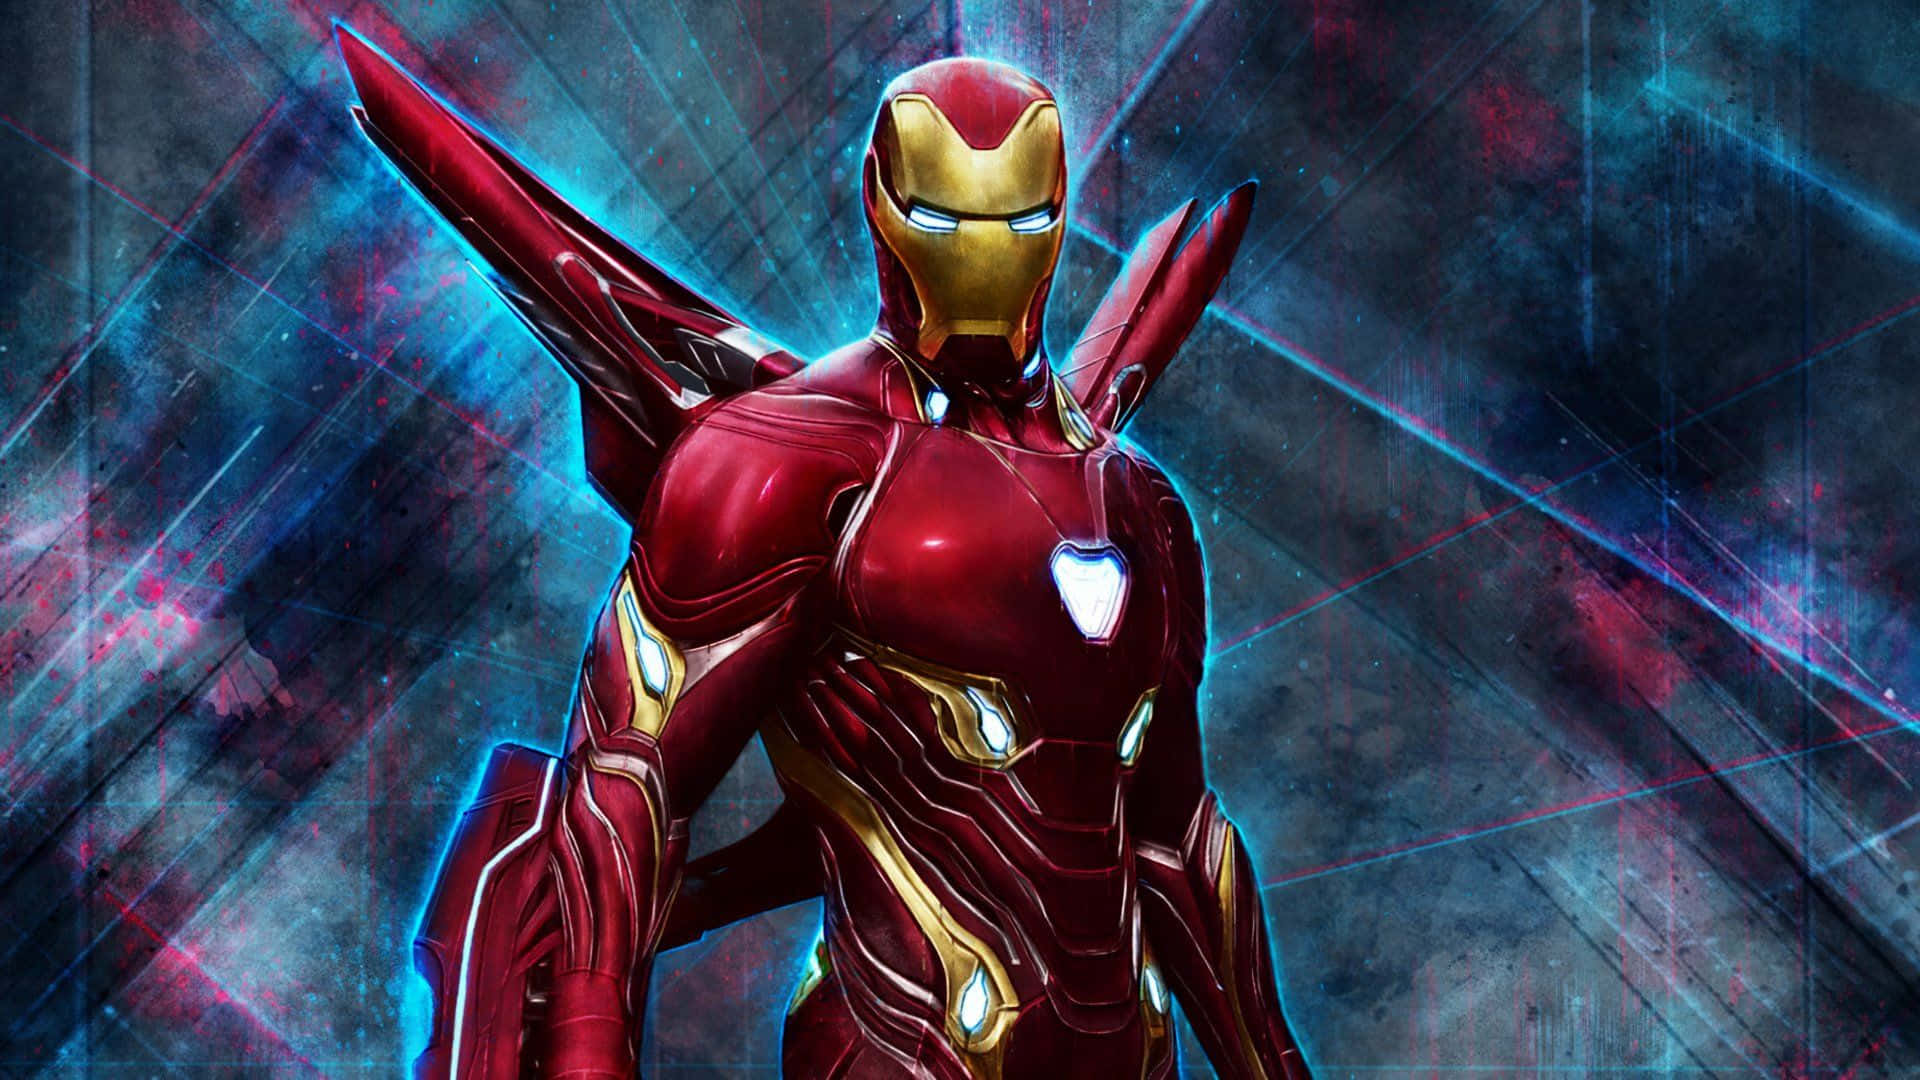 Hochauflösendesbild: Iron Man, Der Held Der Avengers, Vereint Sich, Um Die Welt Zu Verteidigen. Wallpaper